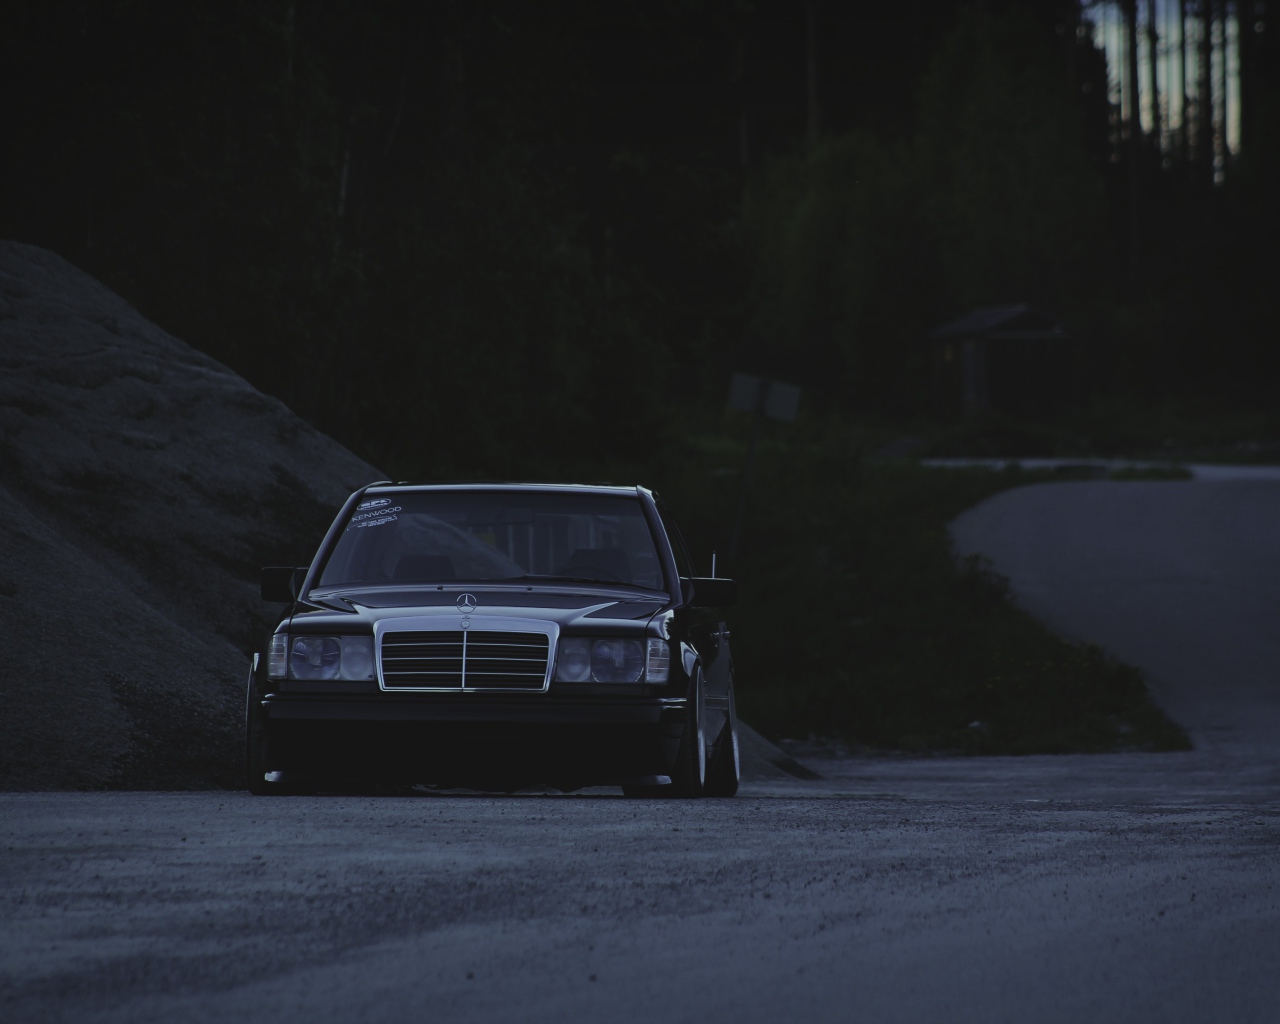 Старый Mercedes-Benz в полумраке